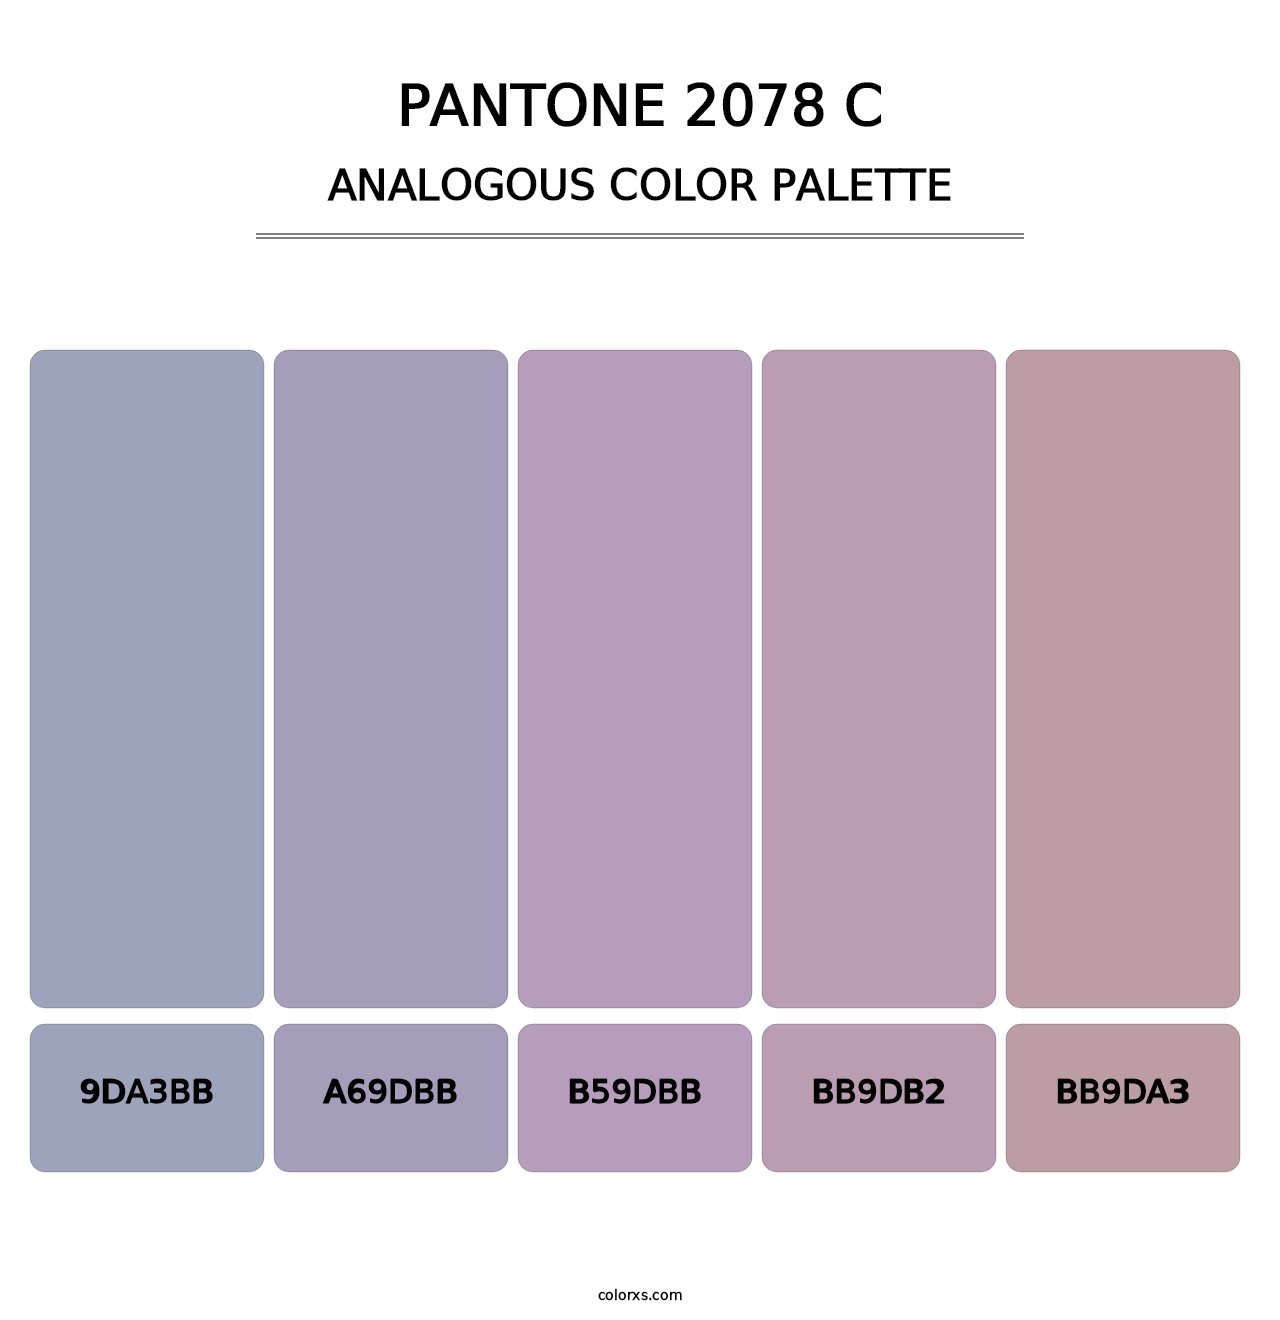 PANTONE 2078 C - Analogous Color Palette